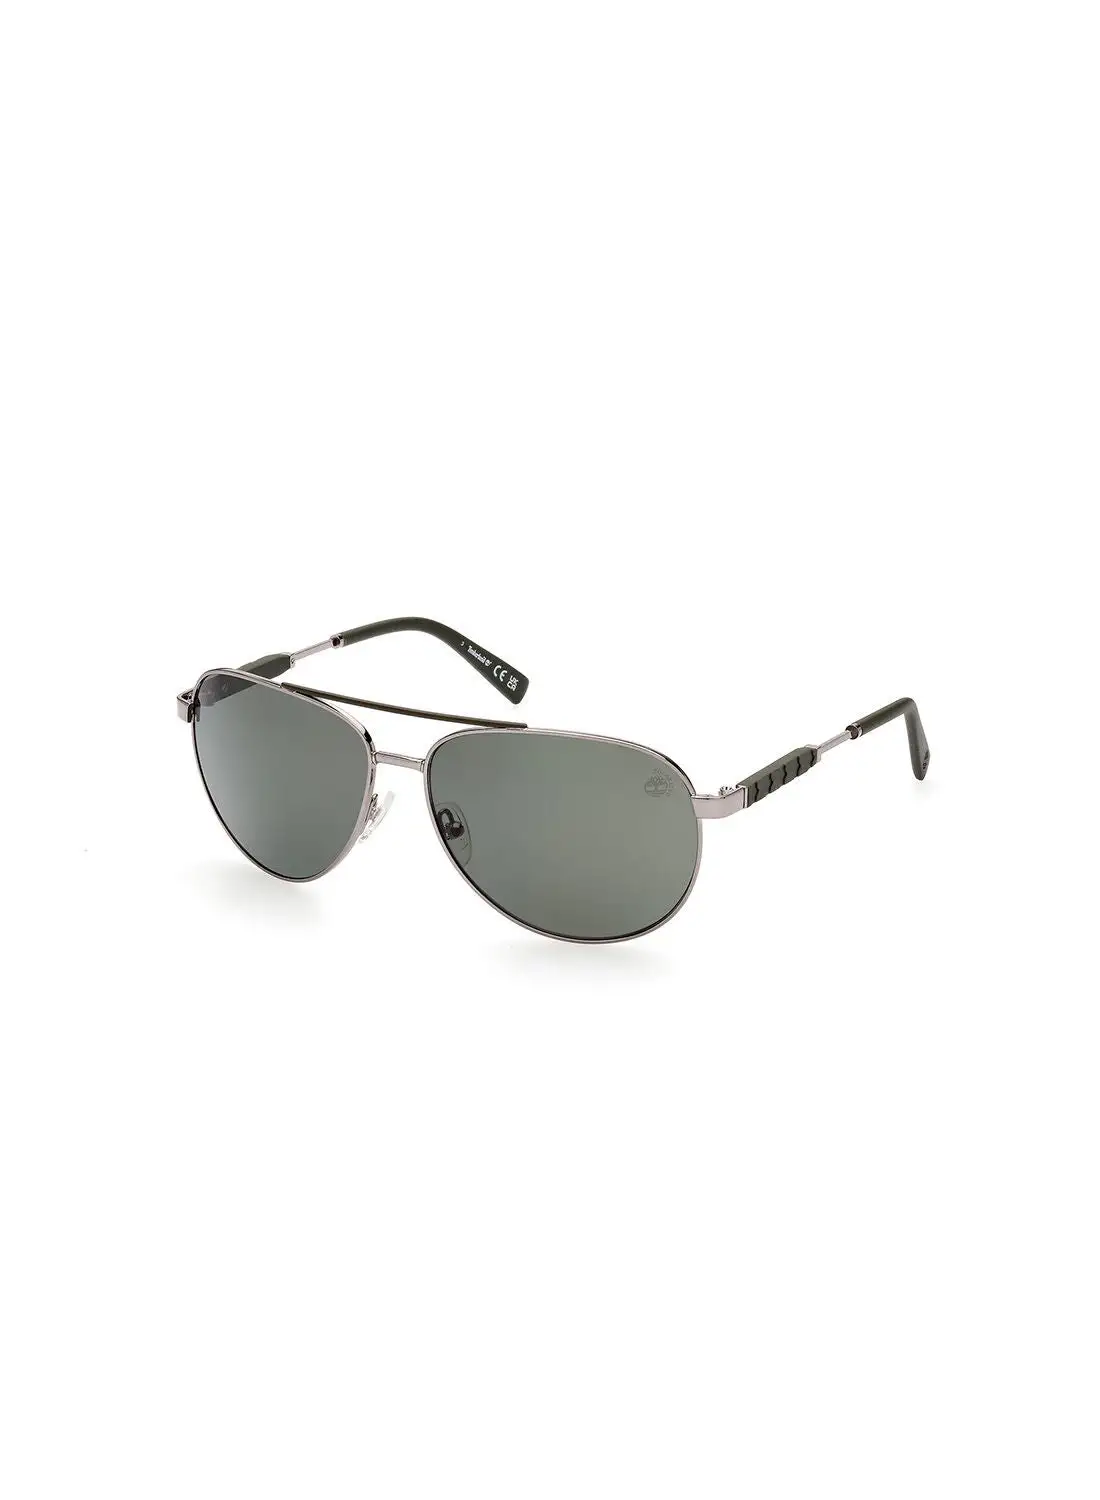 Timberland Men's Polarized Pilot Sunglasses - TB928208R61 - Lens Size: 61 Mm